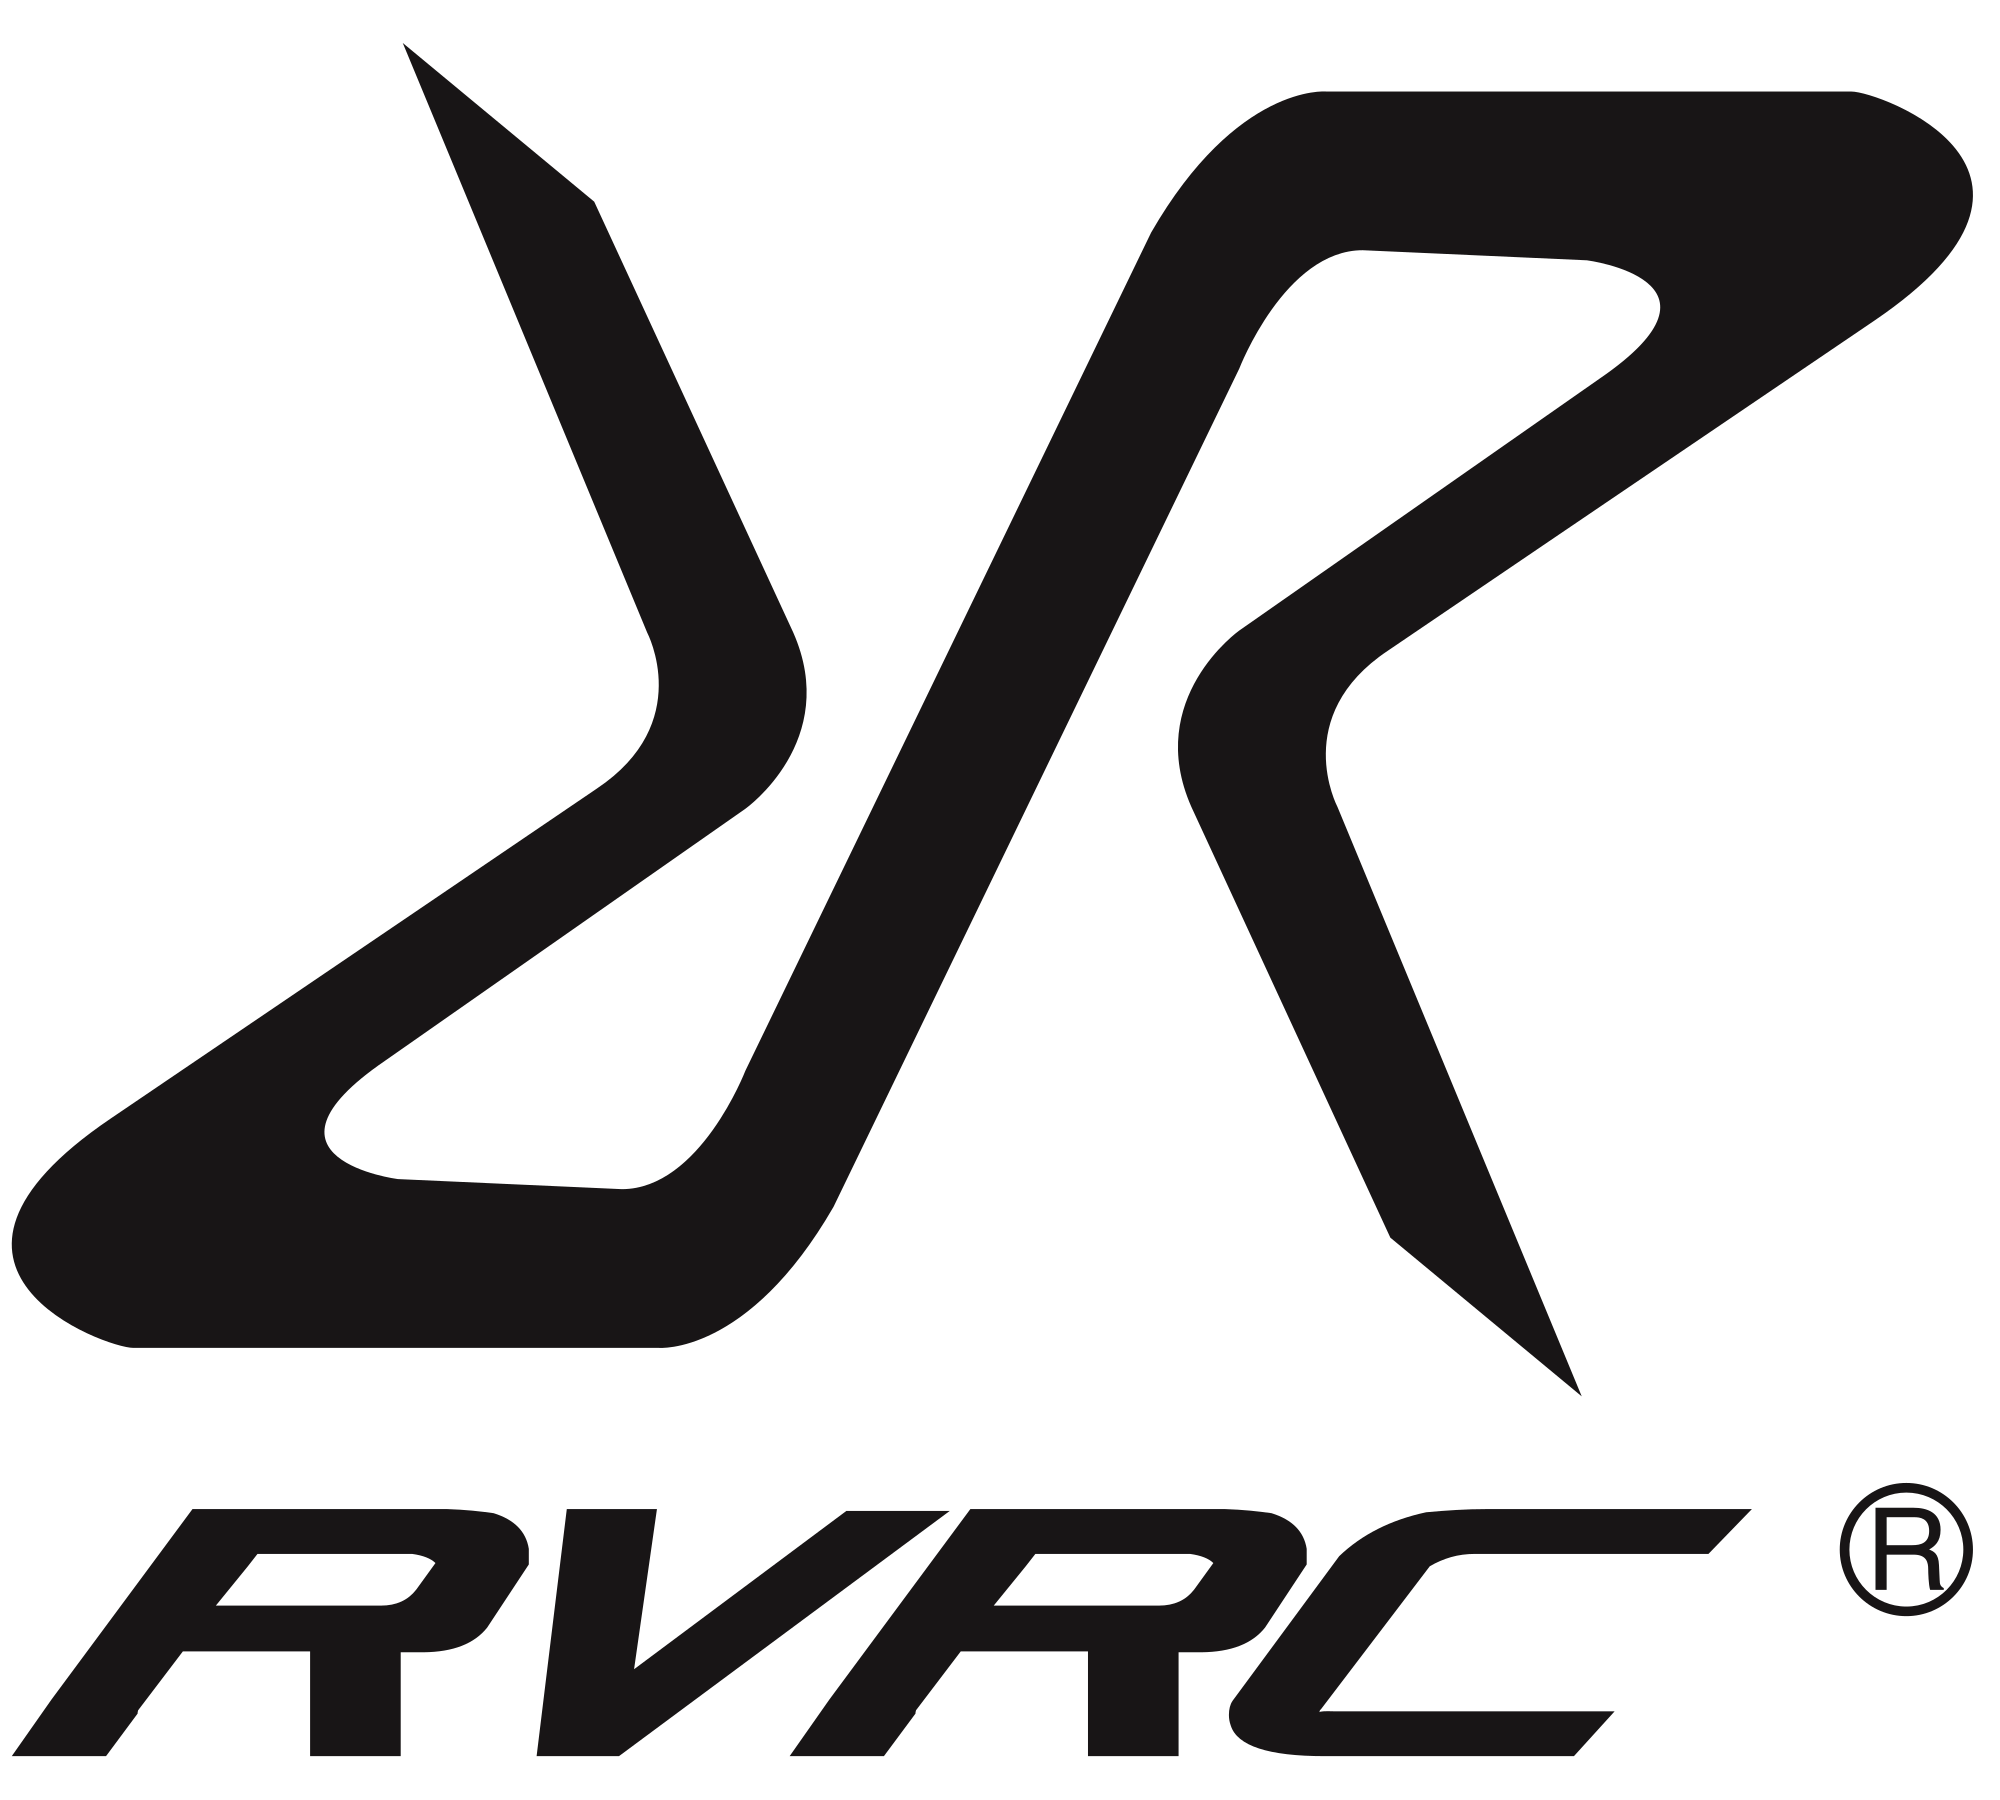 revolutionrace logo